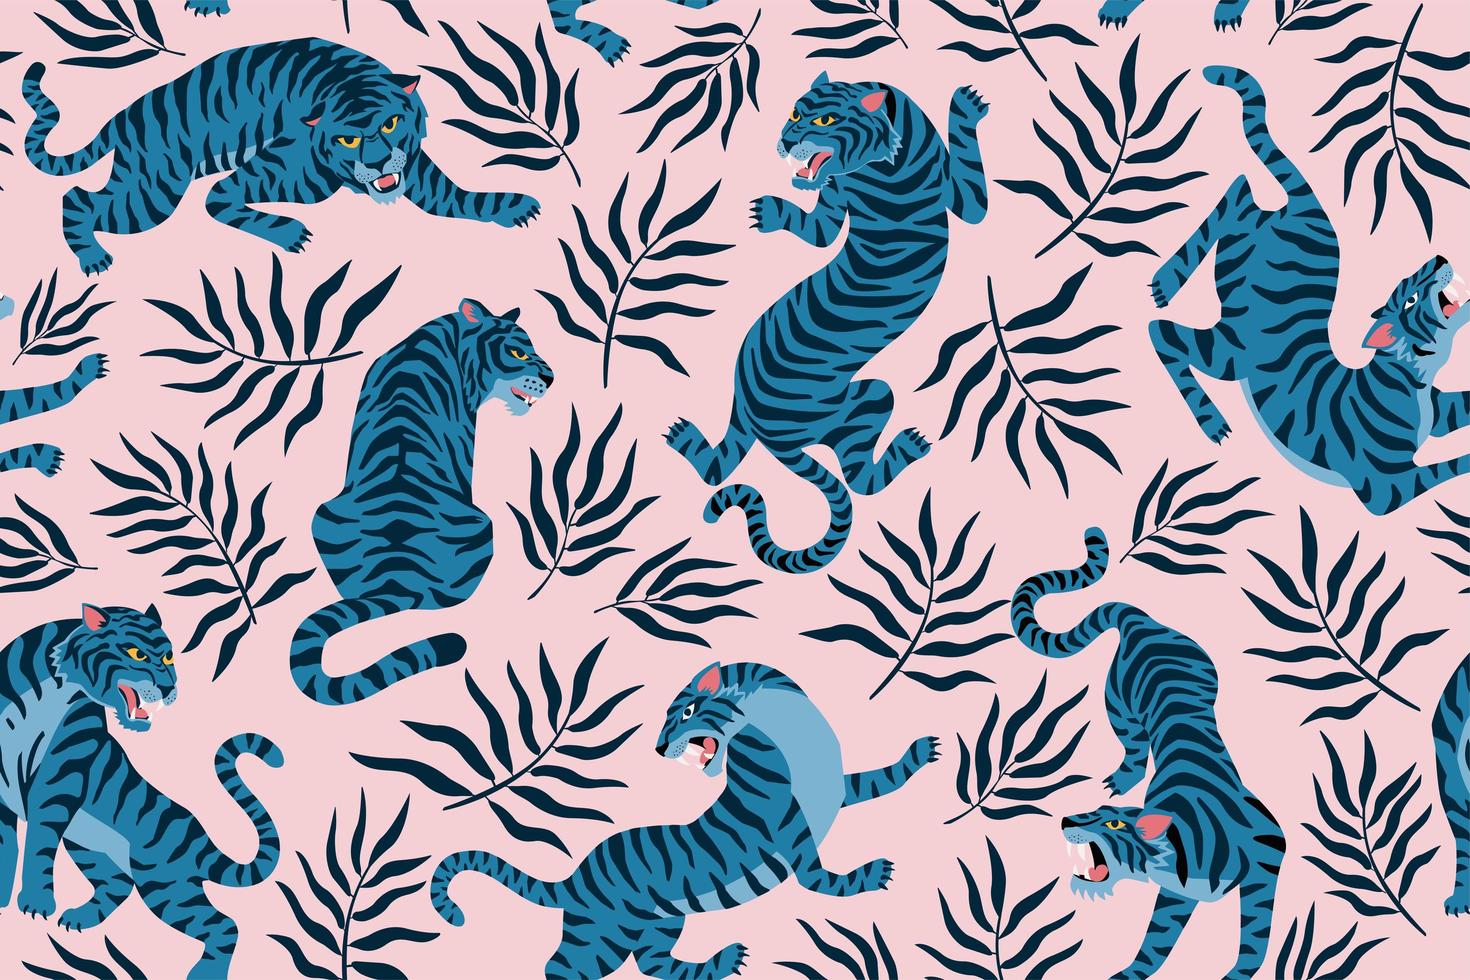 tigres e folhas tropicais. ilustração da moda. padrão sem emenda contemporâneo abstrato. vetor